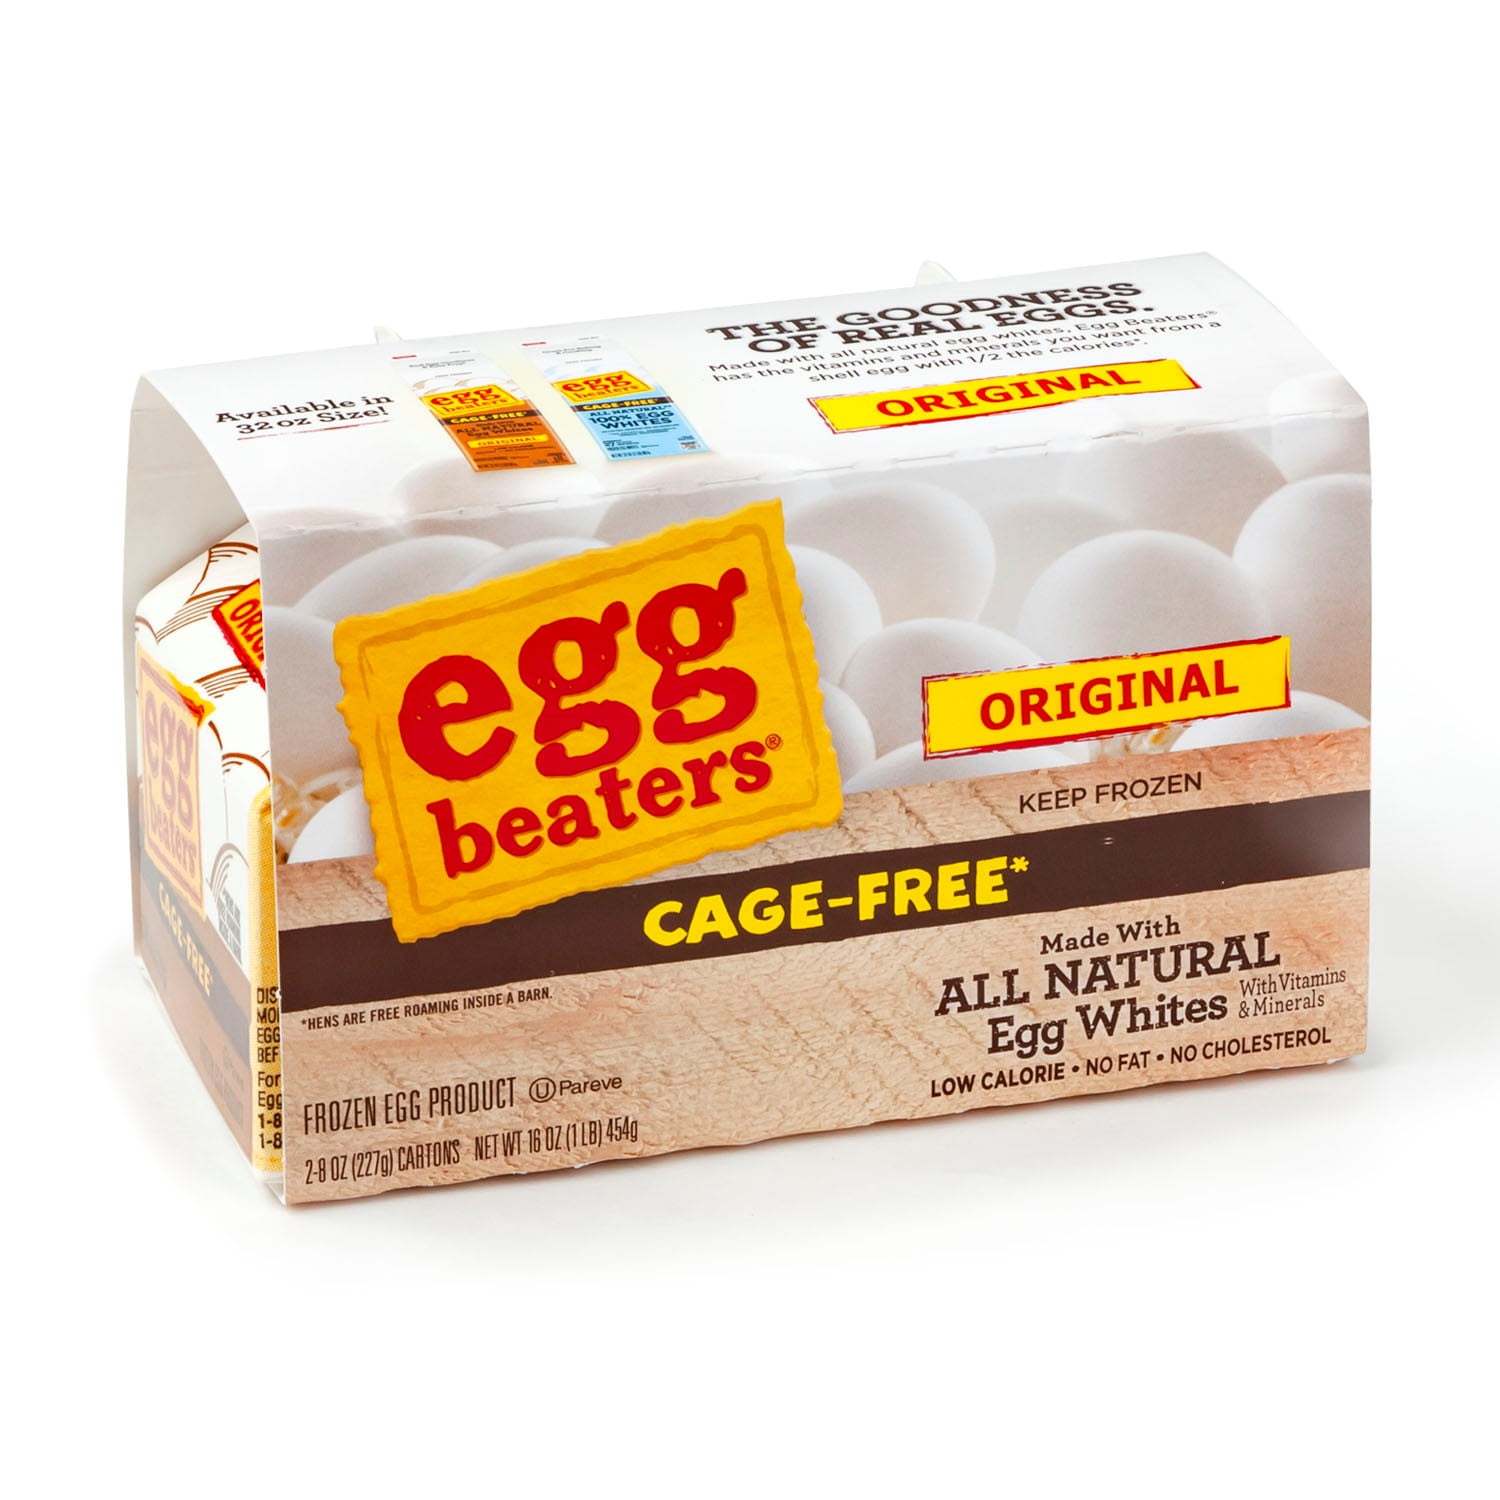 Egg Beaters Egg, Cholesterol Free, Original 16 Oz